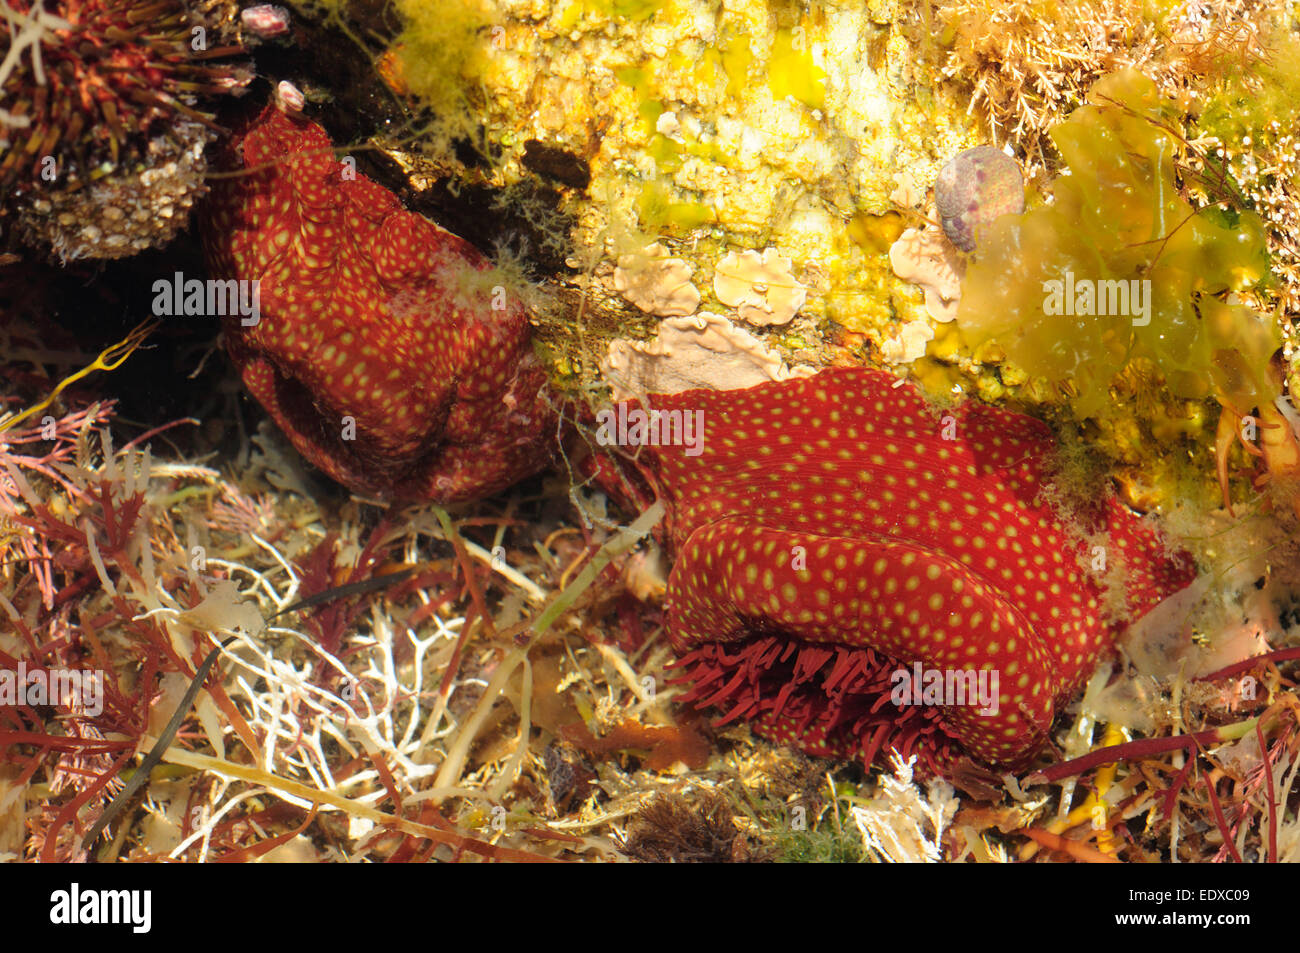 Strawberry anemone (Actinia fragacea) Stock Photo